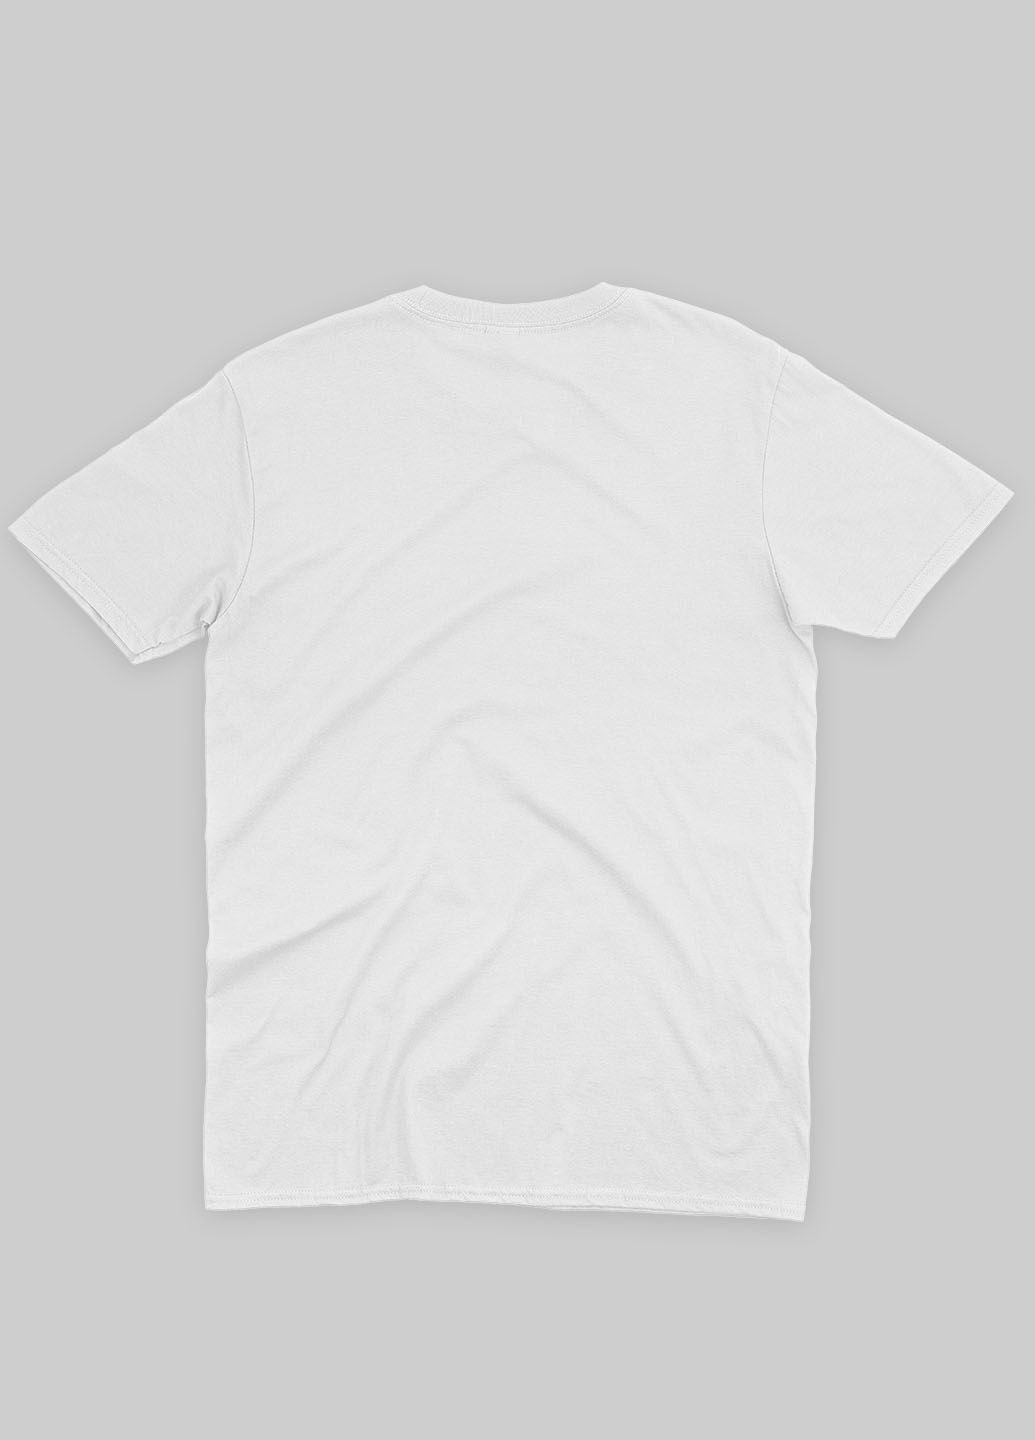 Біла демісезонна футболка для хлопчика з принтом супергероя - супермен (ts001-1-whi-006-009-002-b) Modno